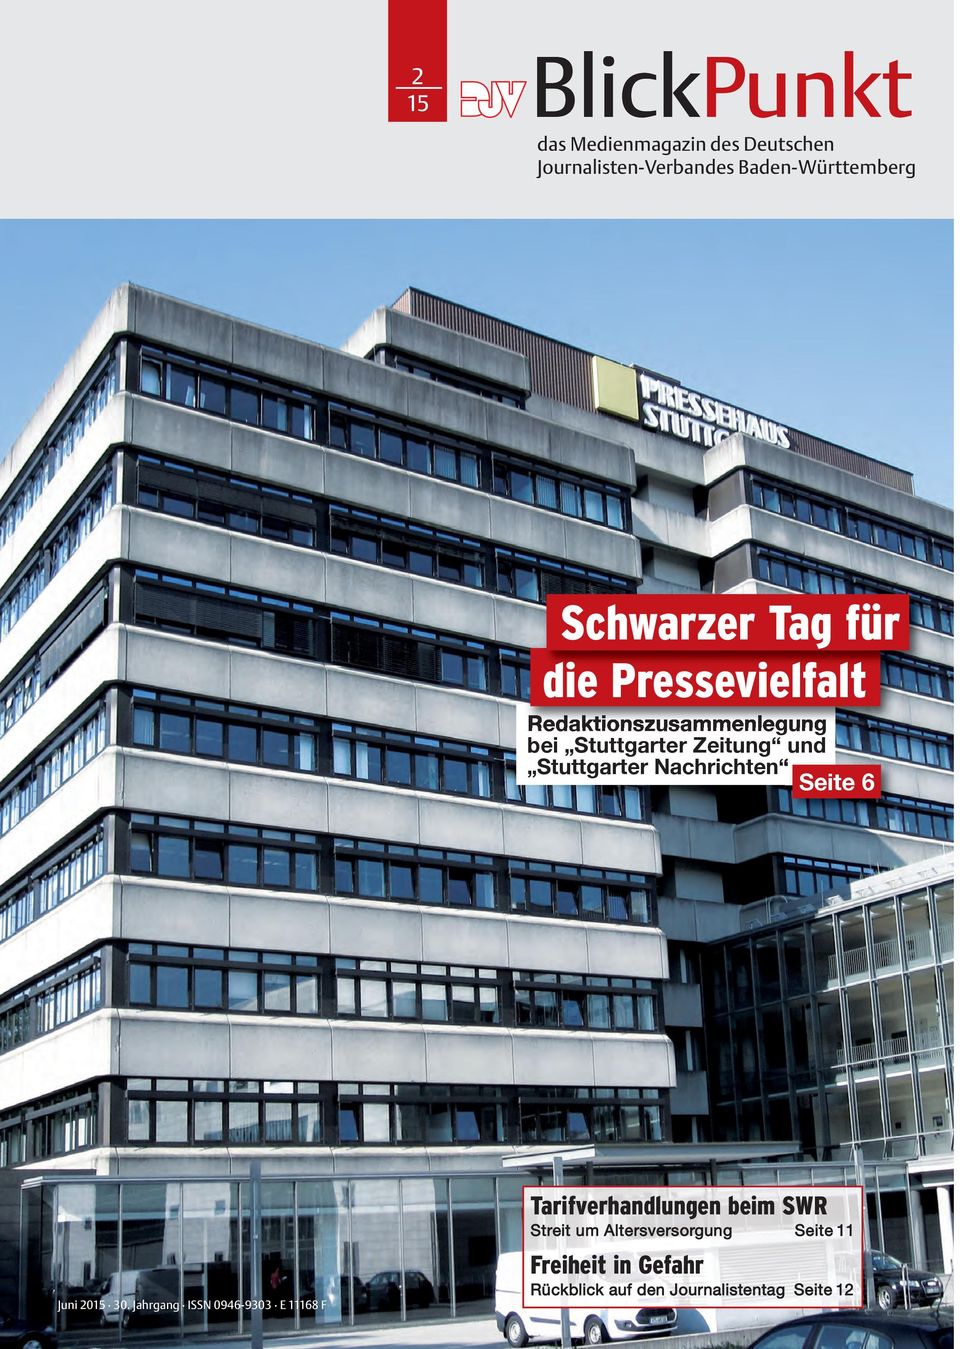 Stuttgarter Nachrichten Seite 6 Juni 2015 30.